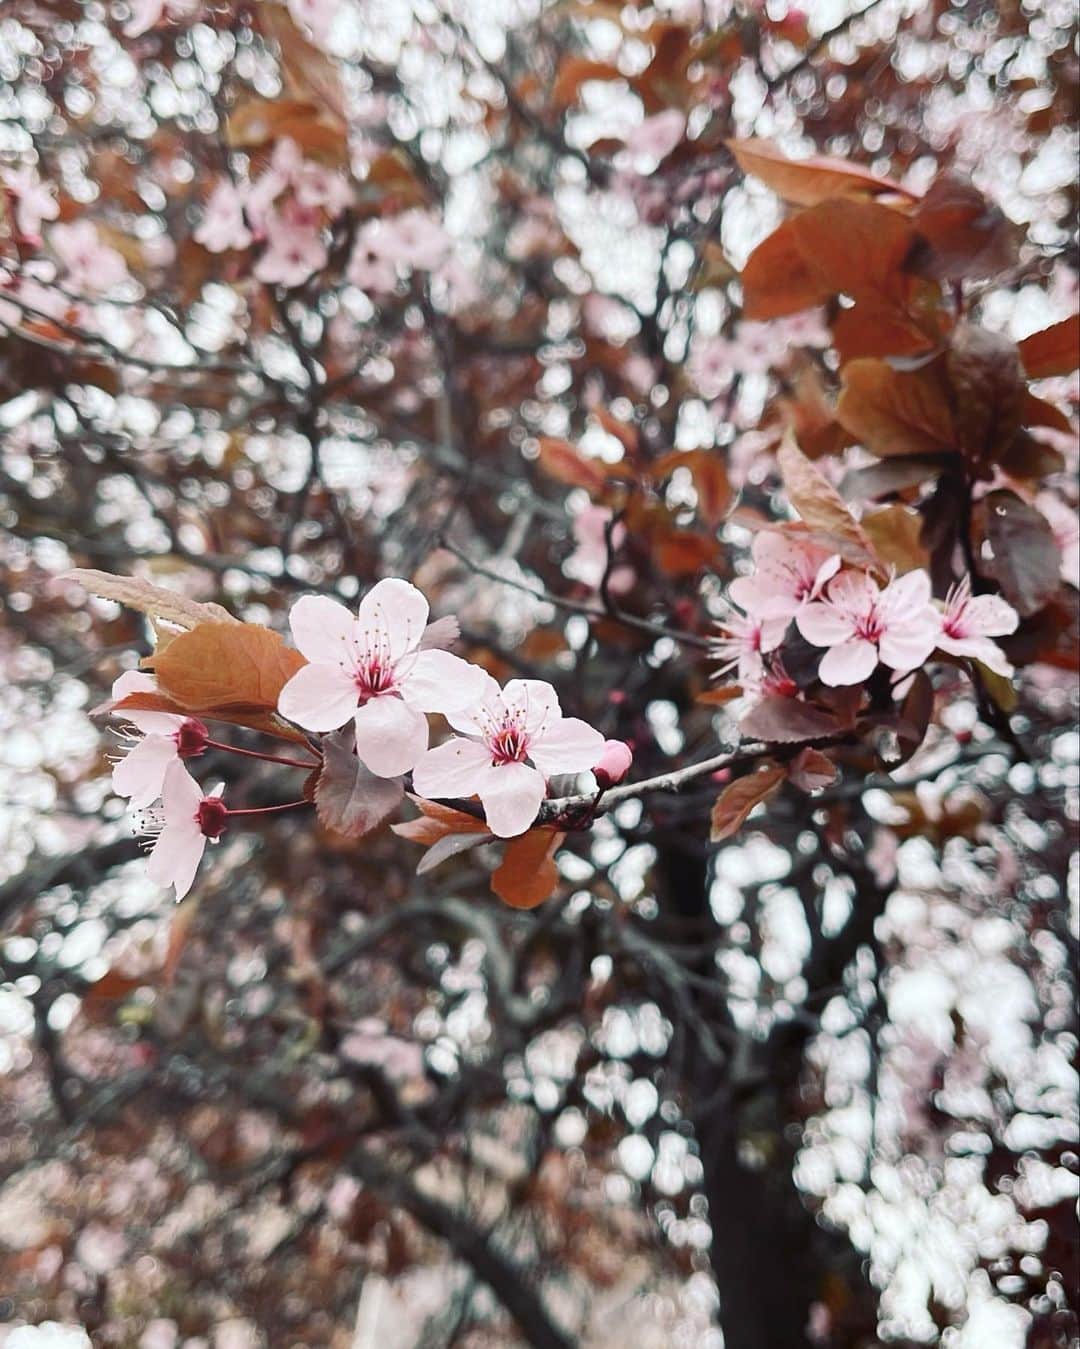 末永百合恵のインスタグラム：「4月はじまり！Poisson d'avril. フランスでも桜が見られて嬉しい🌸  桜の色も、日本のものと比べると少し濃かったり、日本と同じように淡い色のものもあったりして、見ていておもしろい。  風が強くてまだ肌寒い日もあるけれど、春の風をふと感じると、どこにいても、季節の変わり目に感じる独特の感傷が湧いてくる。  これから環境が変わっていく人や、卒業から新しい出会いをされていくそれぞれの人達のはじまりが、素敵なものであるよう願う、4月1日。  今月もよろしくお願いします。  #フランス#パリ#桜#西洋ザクラ#春#季節の変わり目#4月 #poissondavril#spring#april#cherryblossom#sakura#france#paris#avril#saison#printemps#cerisier」